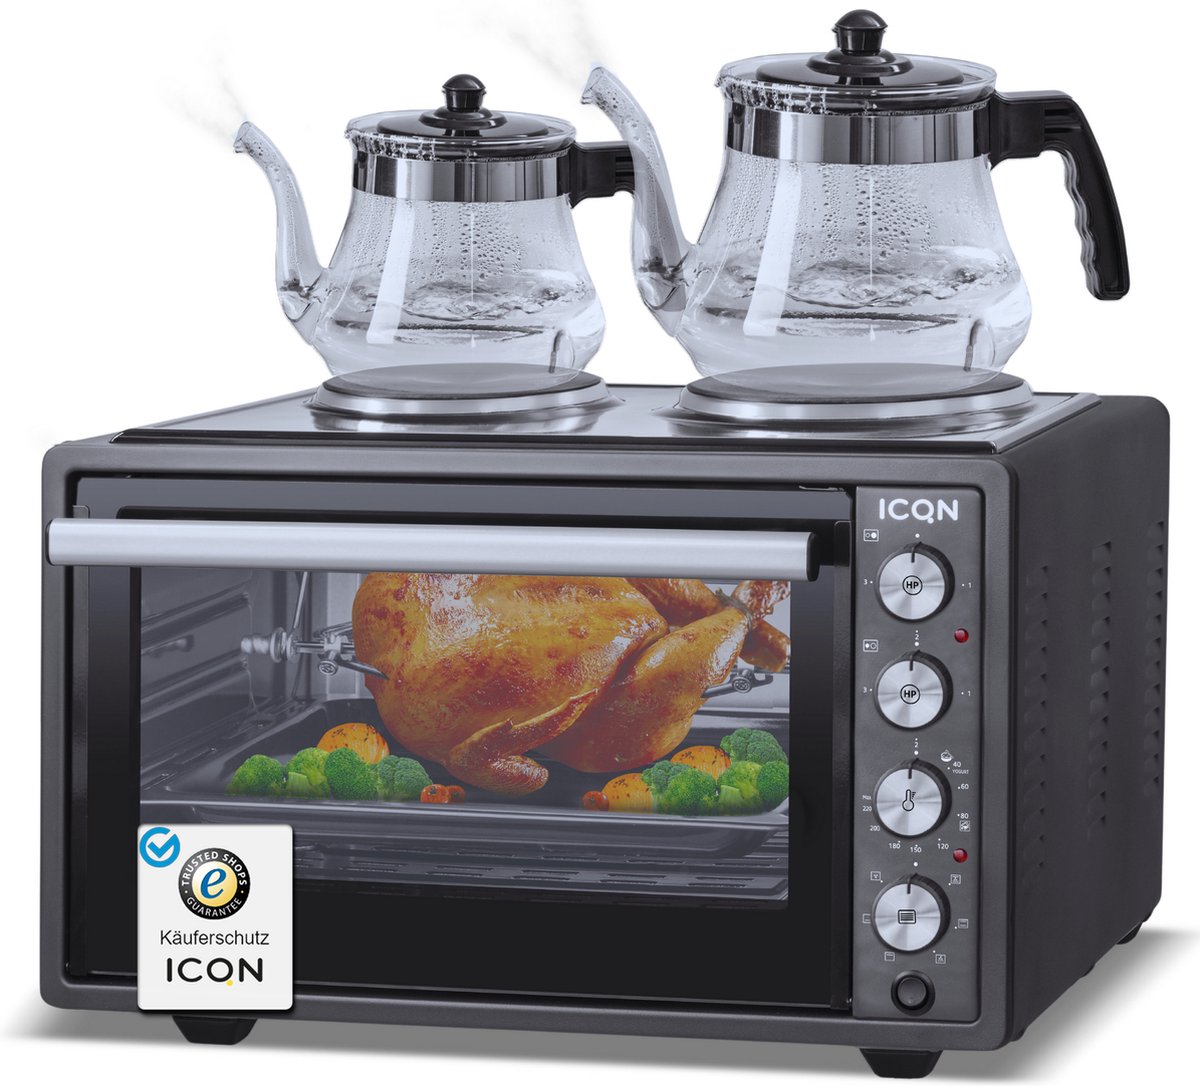 ICQN Vrijstaande Oven Met 2 Kookplaten - 42L - Convectie Mini Oven - Hetelucht & Grillfunctie - Geëmailleerde Holte - Zwart - ICQN